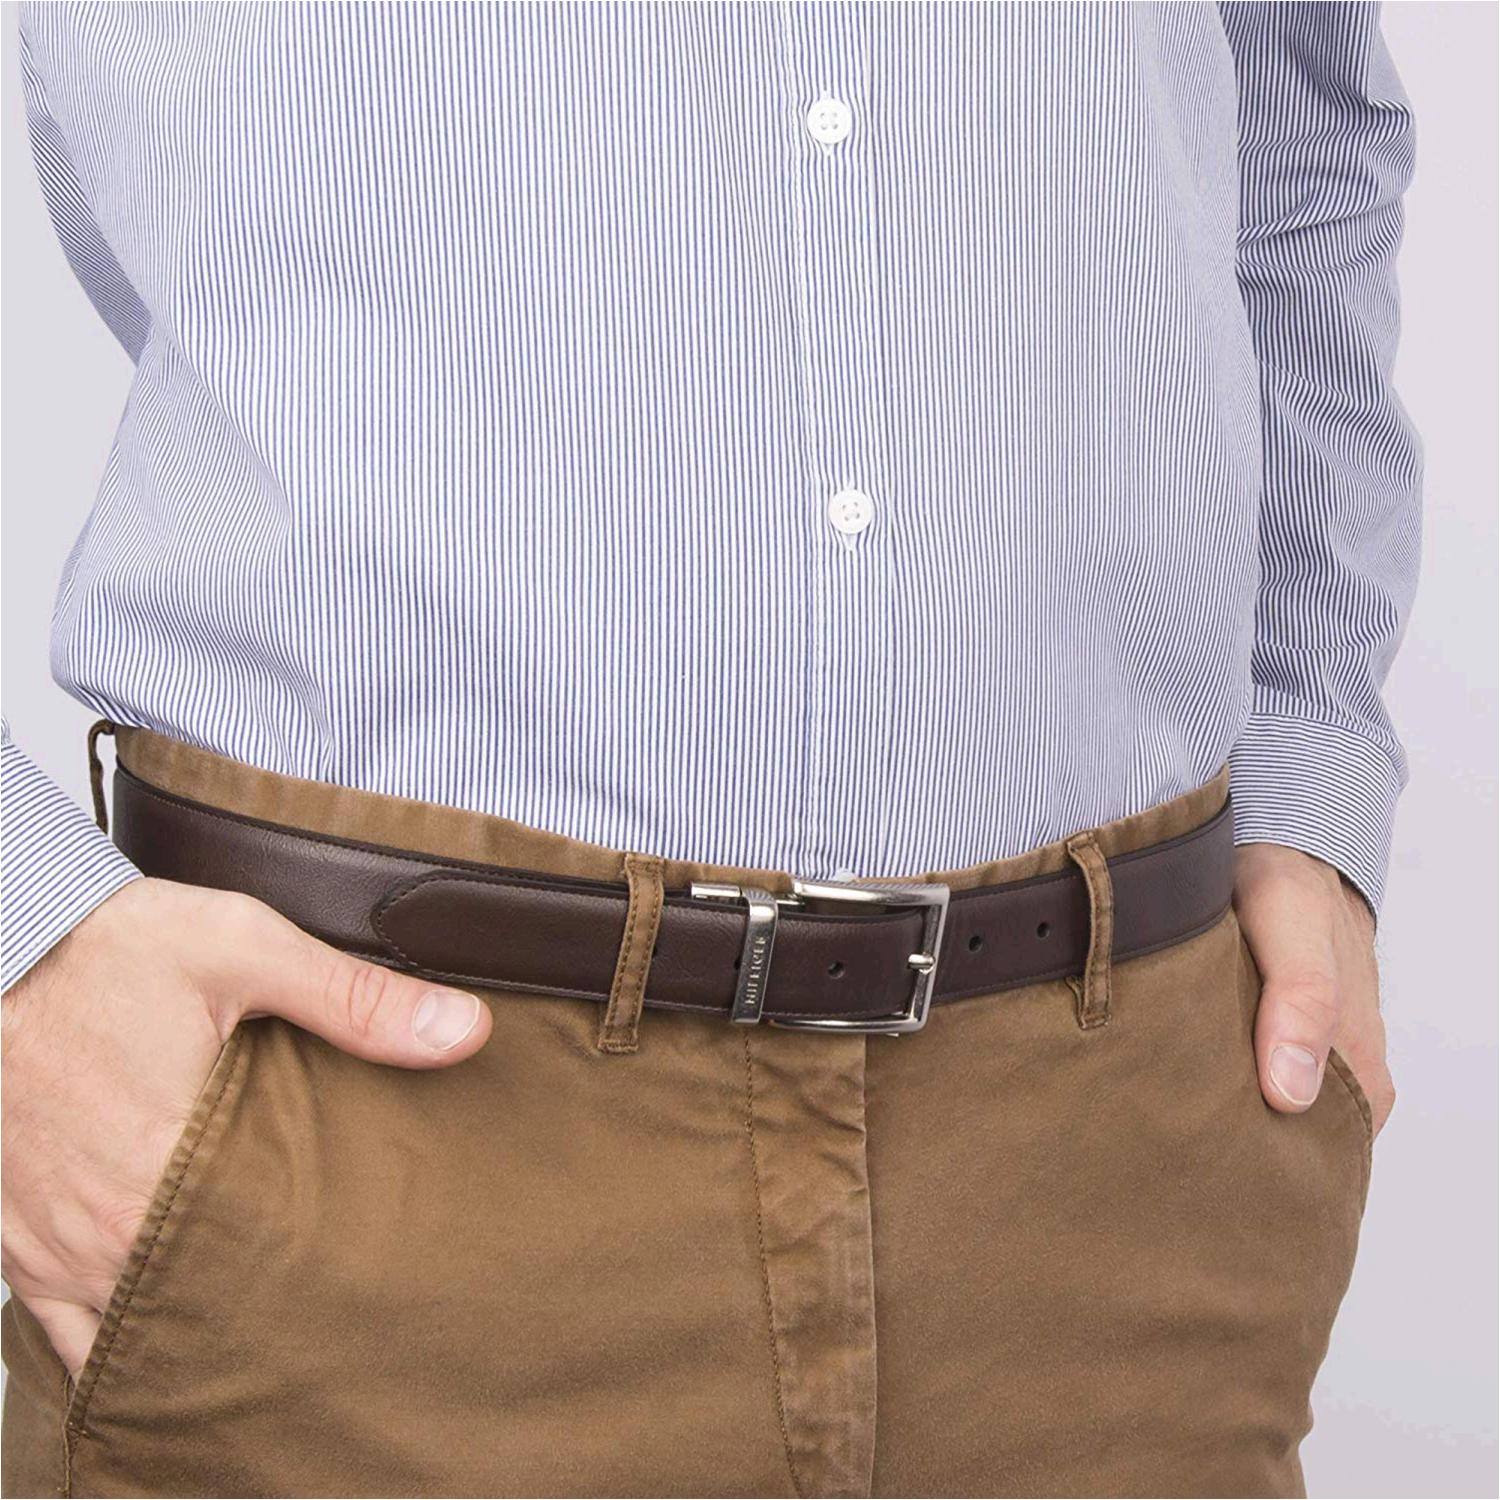 Tommy Hilfiger Reversible Leather Belt - Casual for Mens, Brown/Black, Size 34 i | eBay